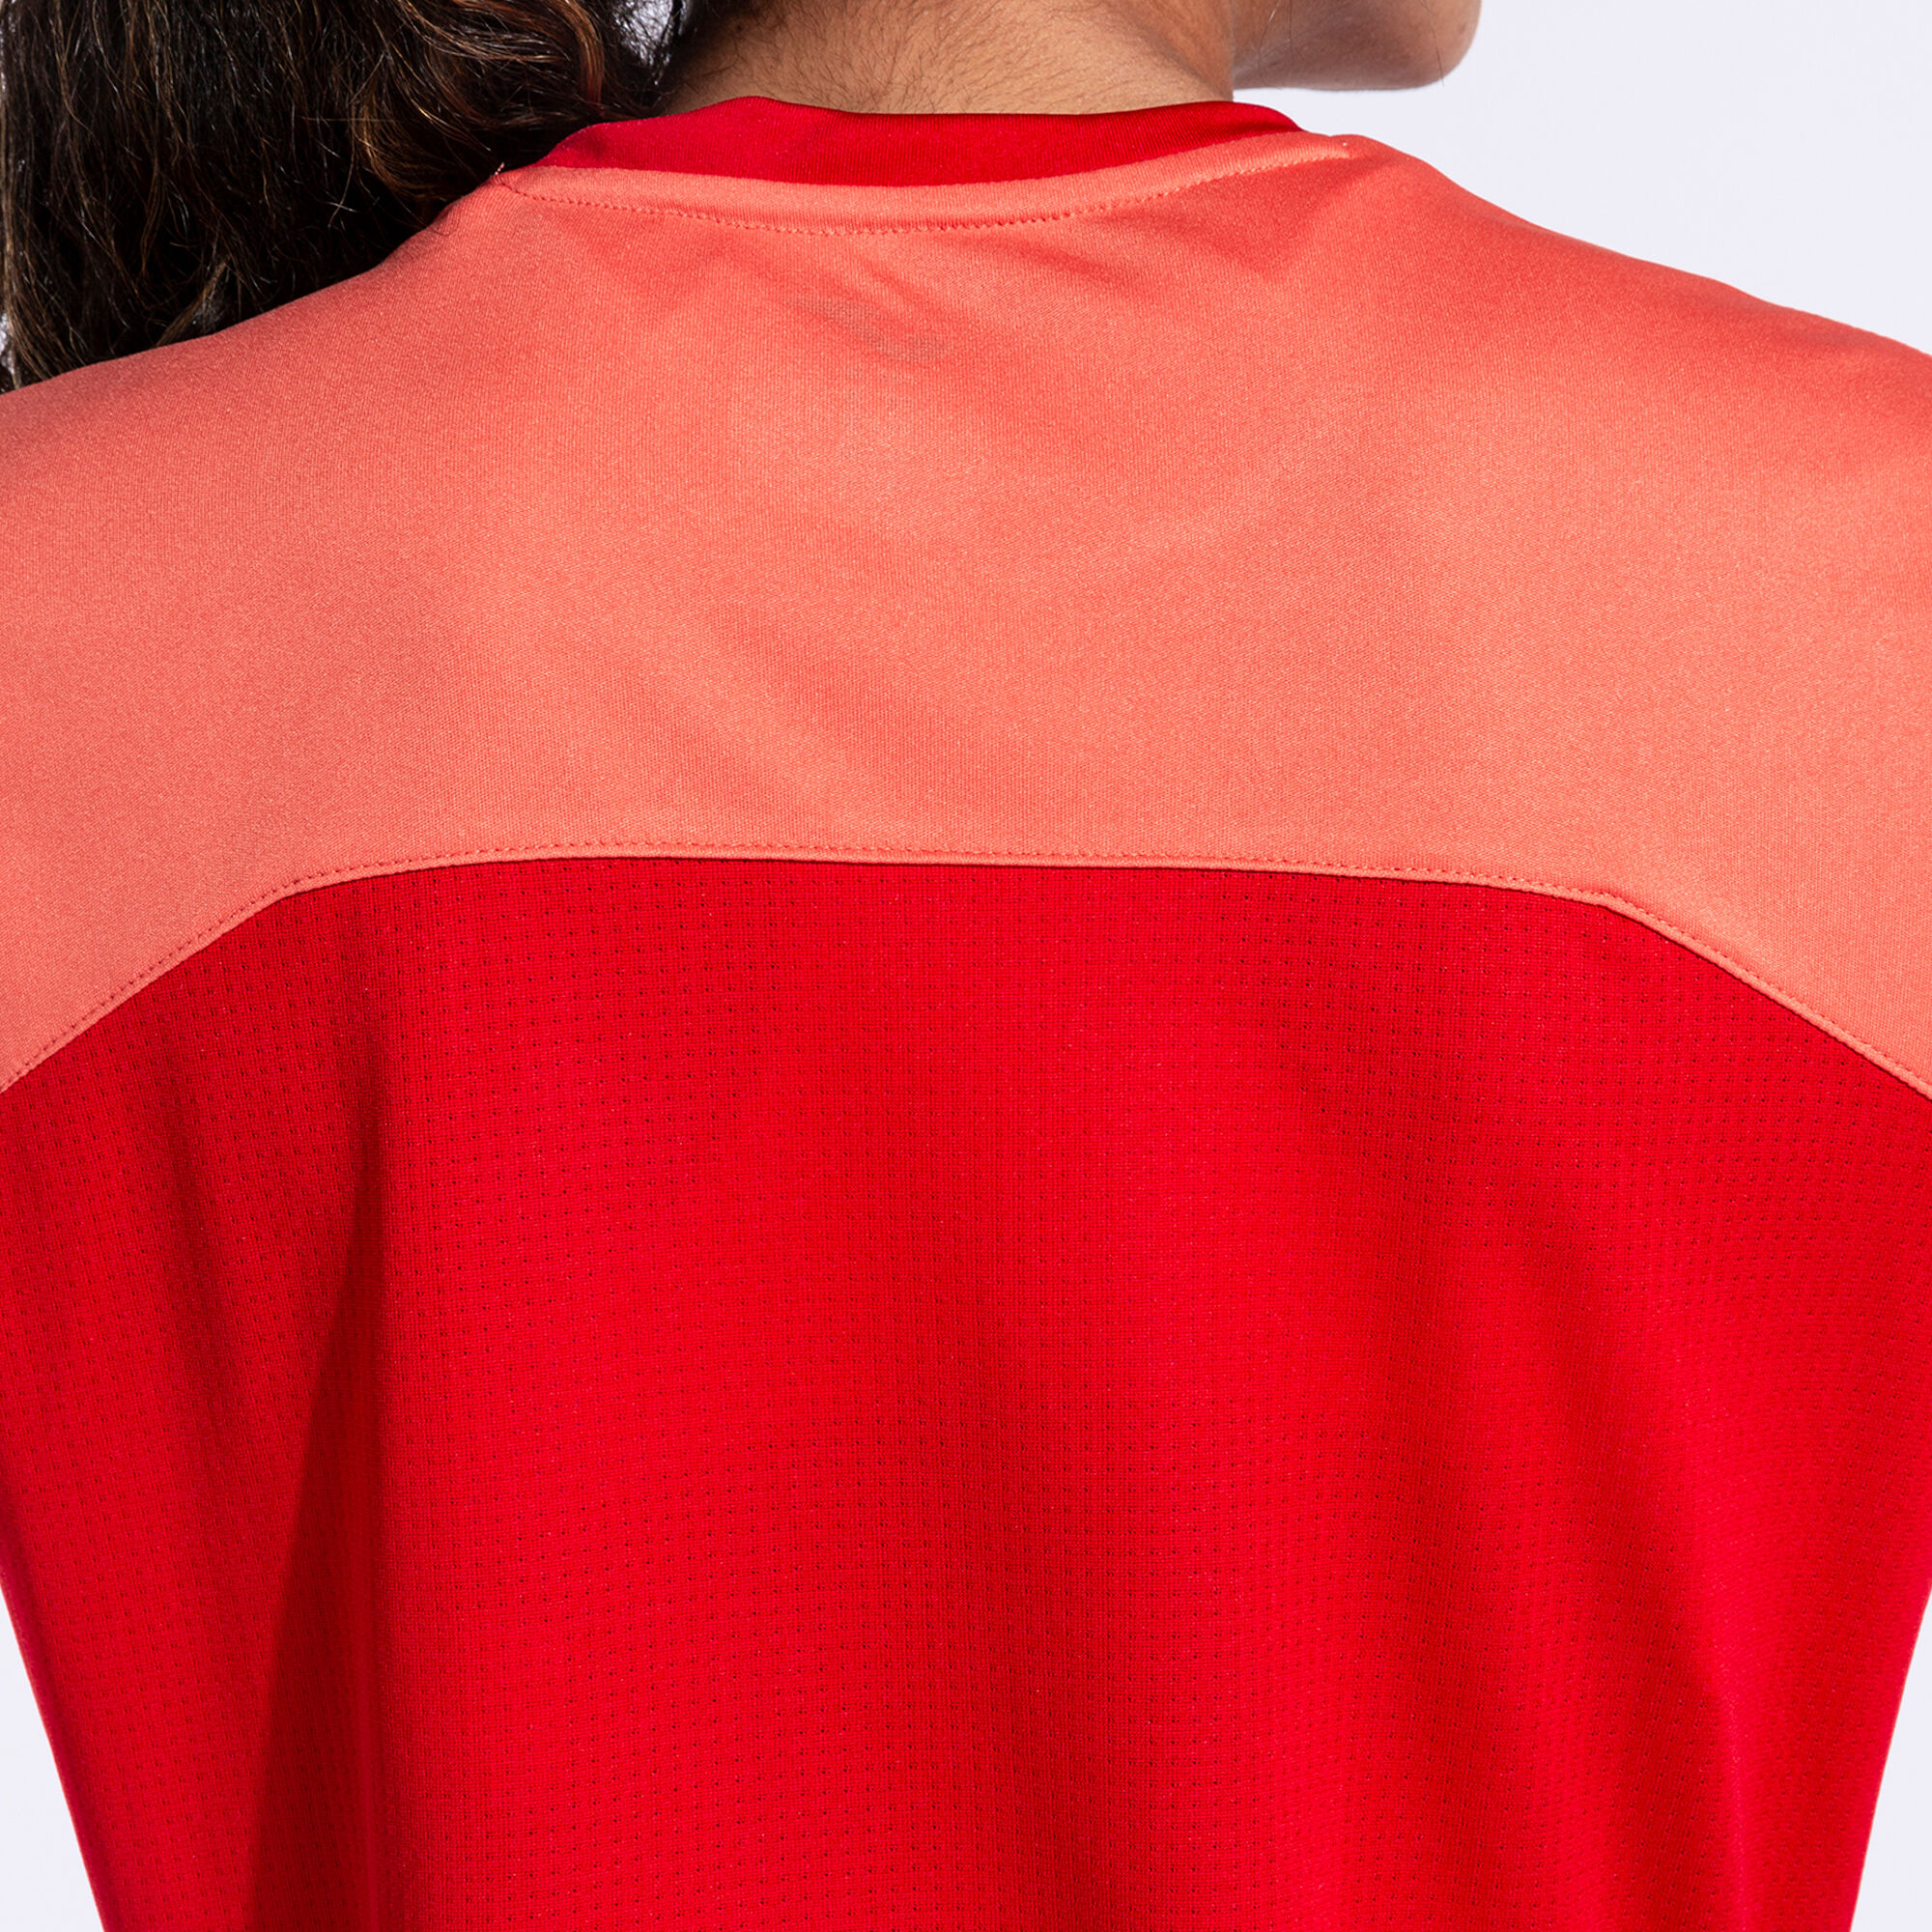 Camiseta manga corta mujer Winner II rojo